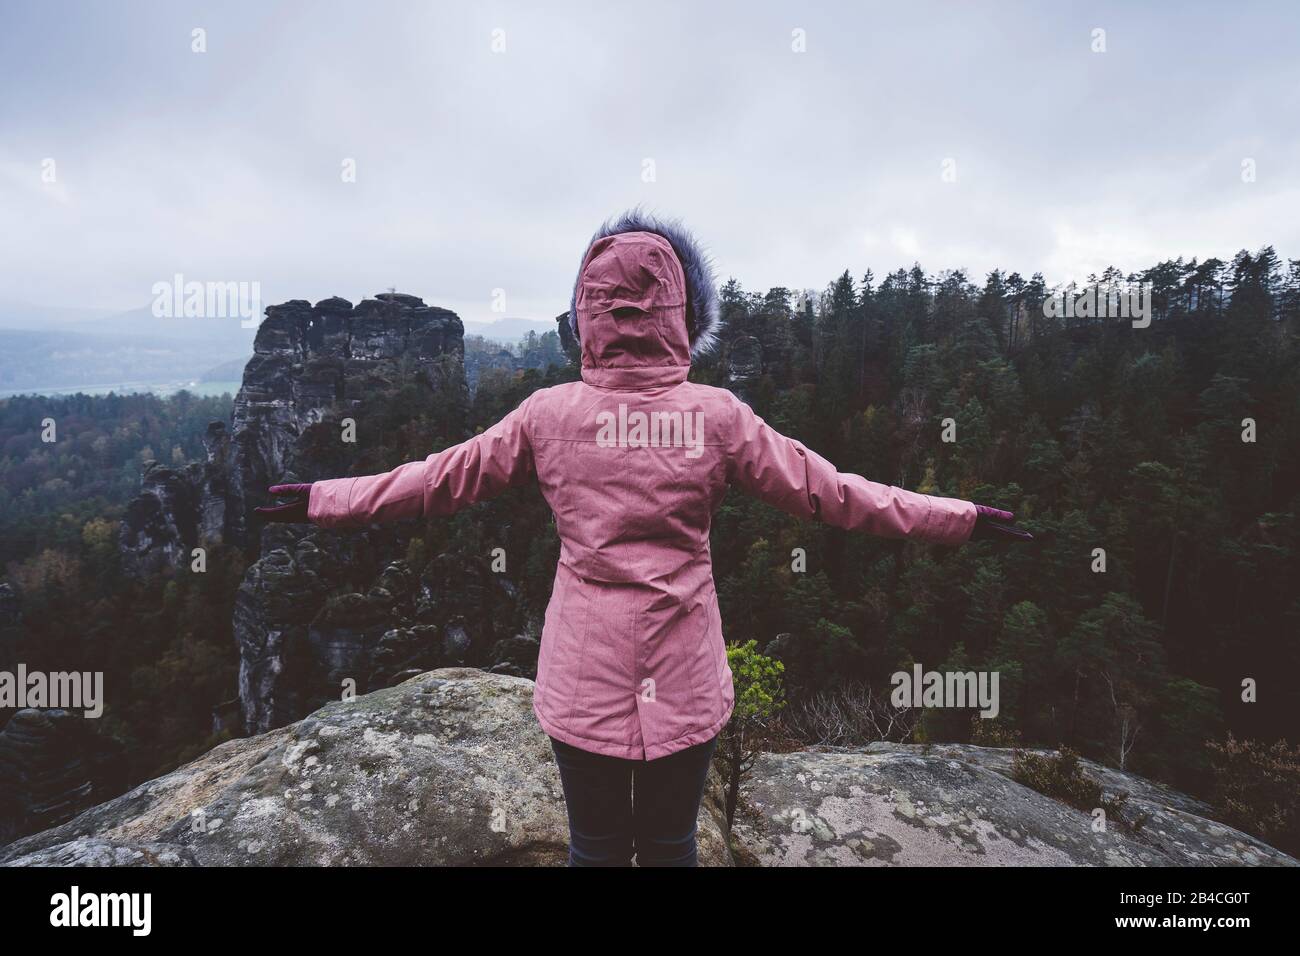 Junge Frau in winterlicher Kleidung im Freien, die allein auf einem Berg steht und die Aussicht genießt, Reiselebensstil-Harmoniekonzept, Rückansicht Foto Stock